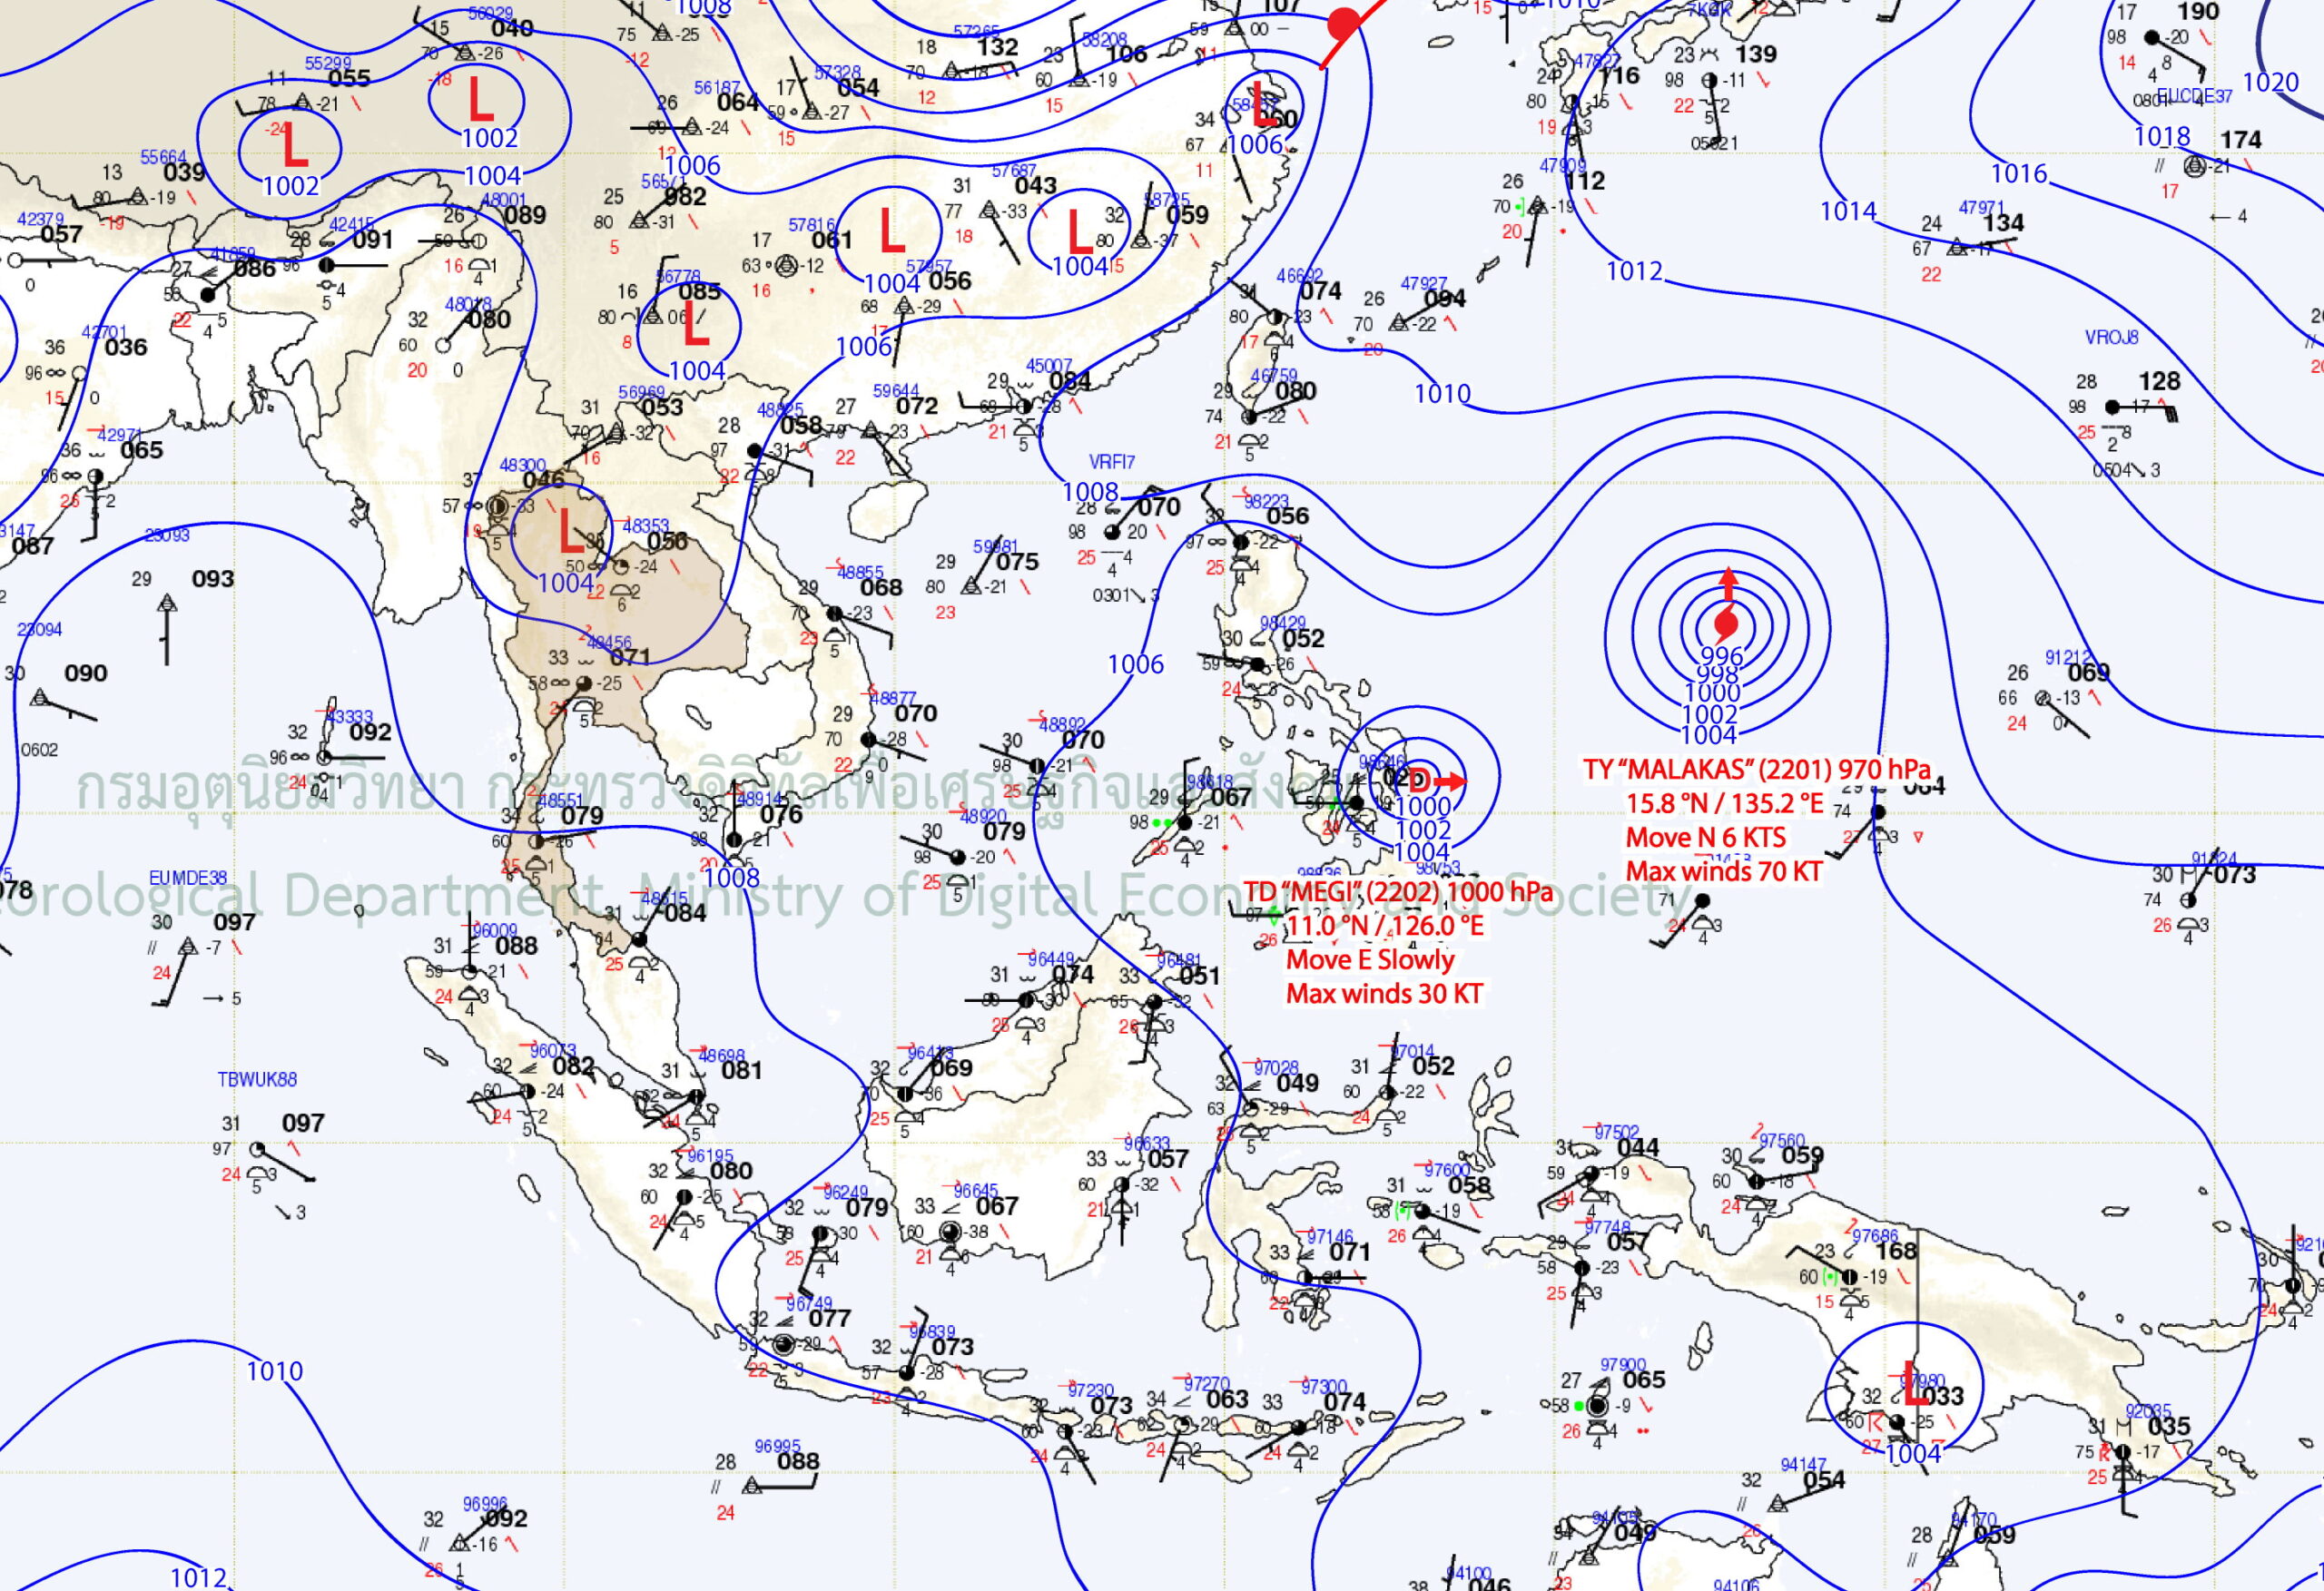 พายุดีเปรสชัน “เมกี” บริเวณตอนกลางของประเทศฟิลิปปินส์ และ พายุโซนร้อน “มาลากัส”บริเวณมหาสมุทรแปซิฟิก